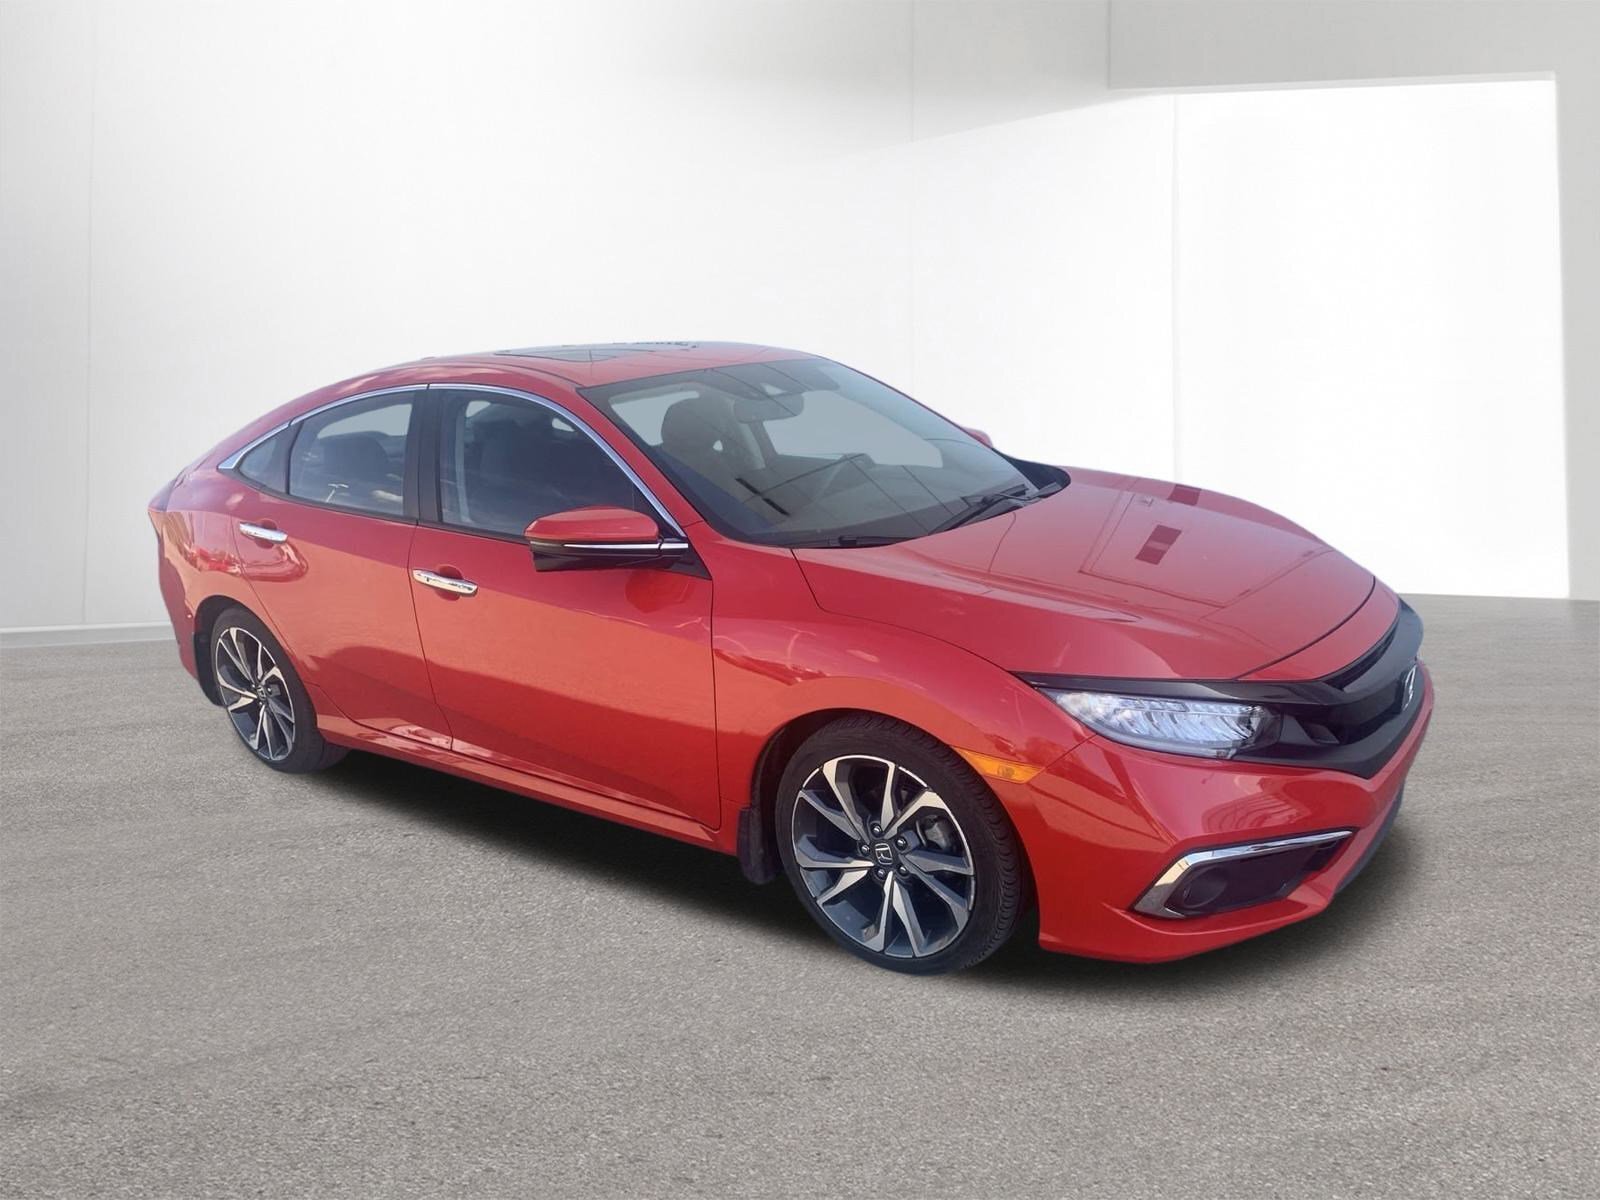 2019 Honda Civic Sedan Touring - Lease buyback (LOW KMs ALERT!)